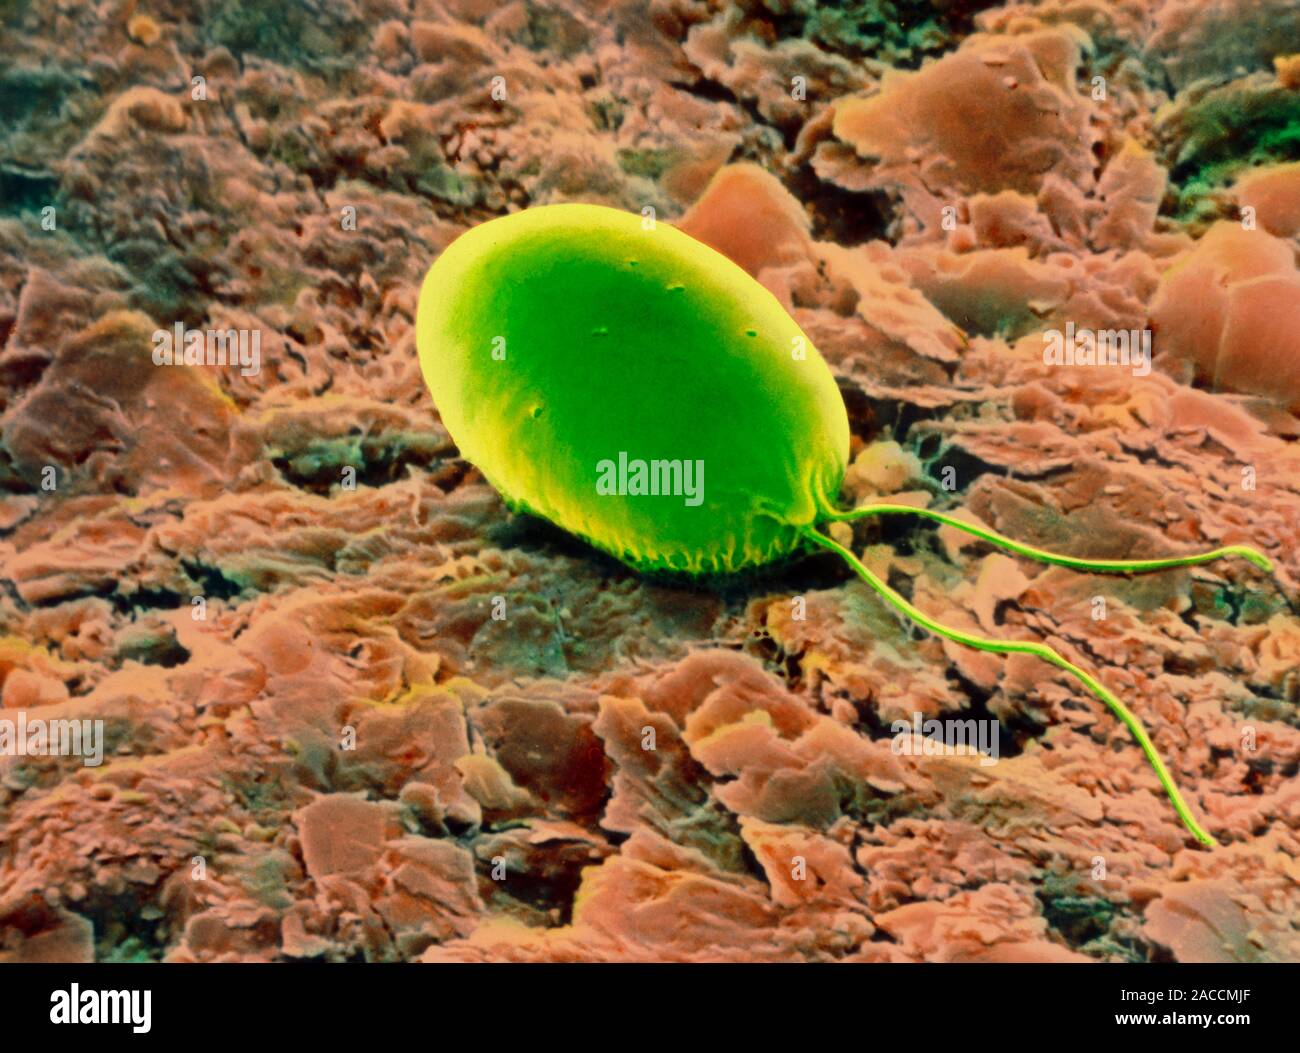 Chlamydomonas chlorostellata. Farbige Scanning Electron Micrograph der einzelligen grünes Süßwasser-Alge Chlamydomonas chlorostellata, auf einer unkn Stockfoto